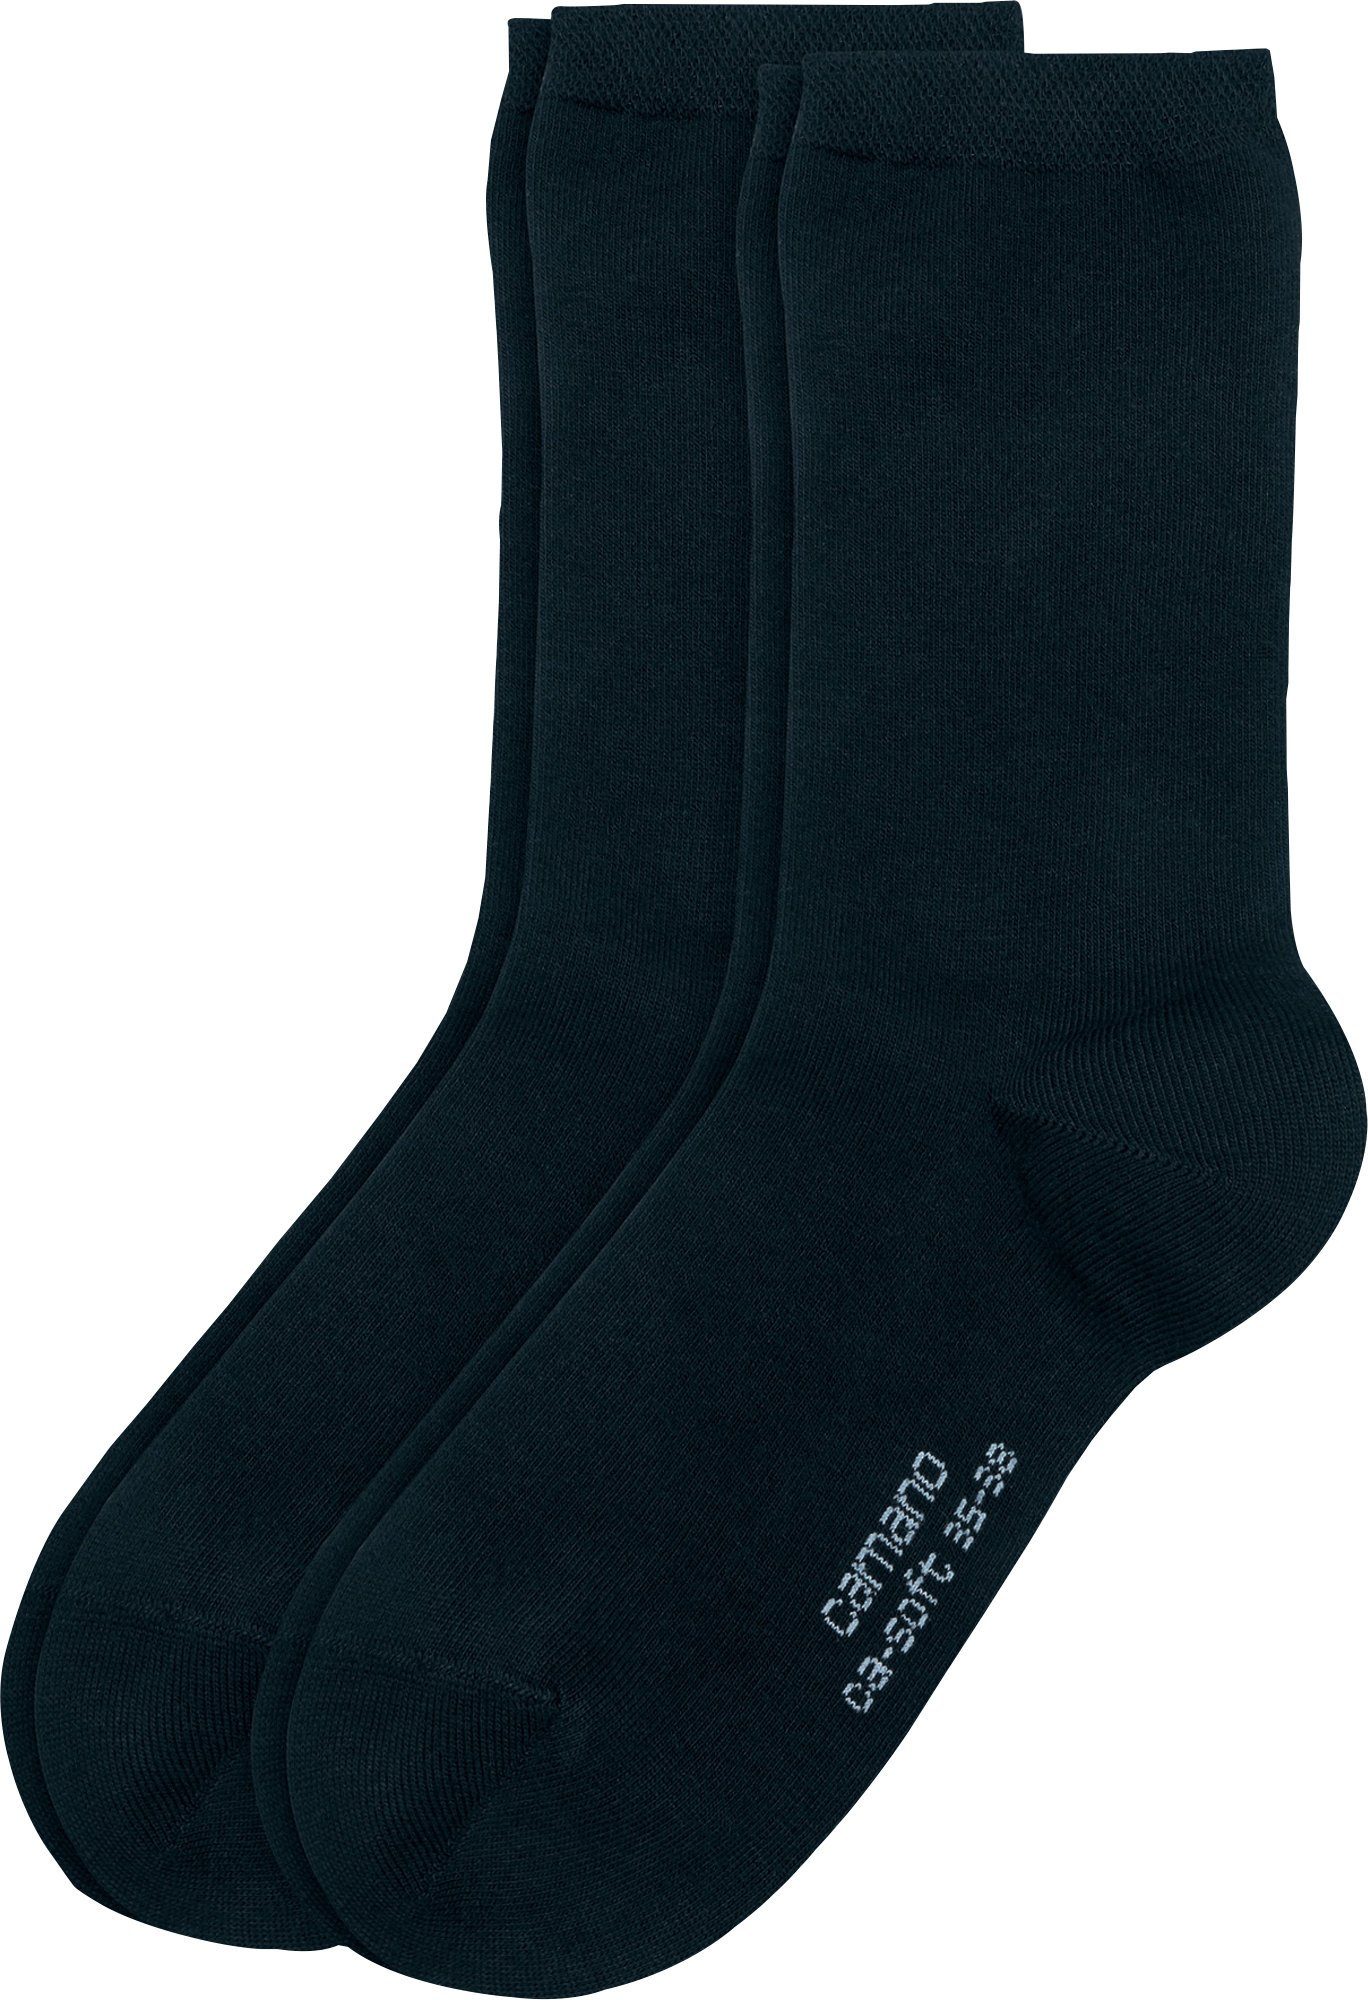 Camano Socken Damen-Socken 2 Paar Uni marine